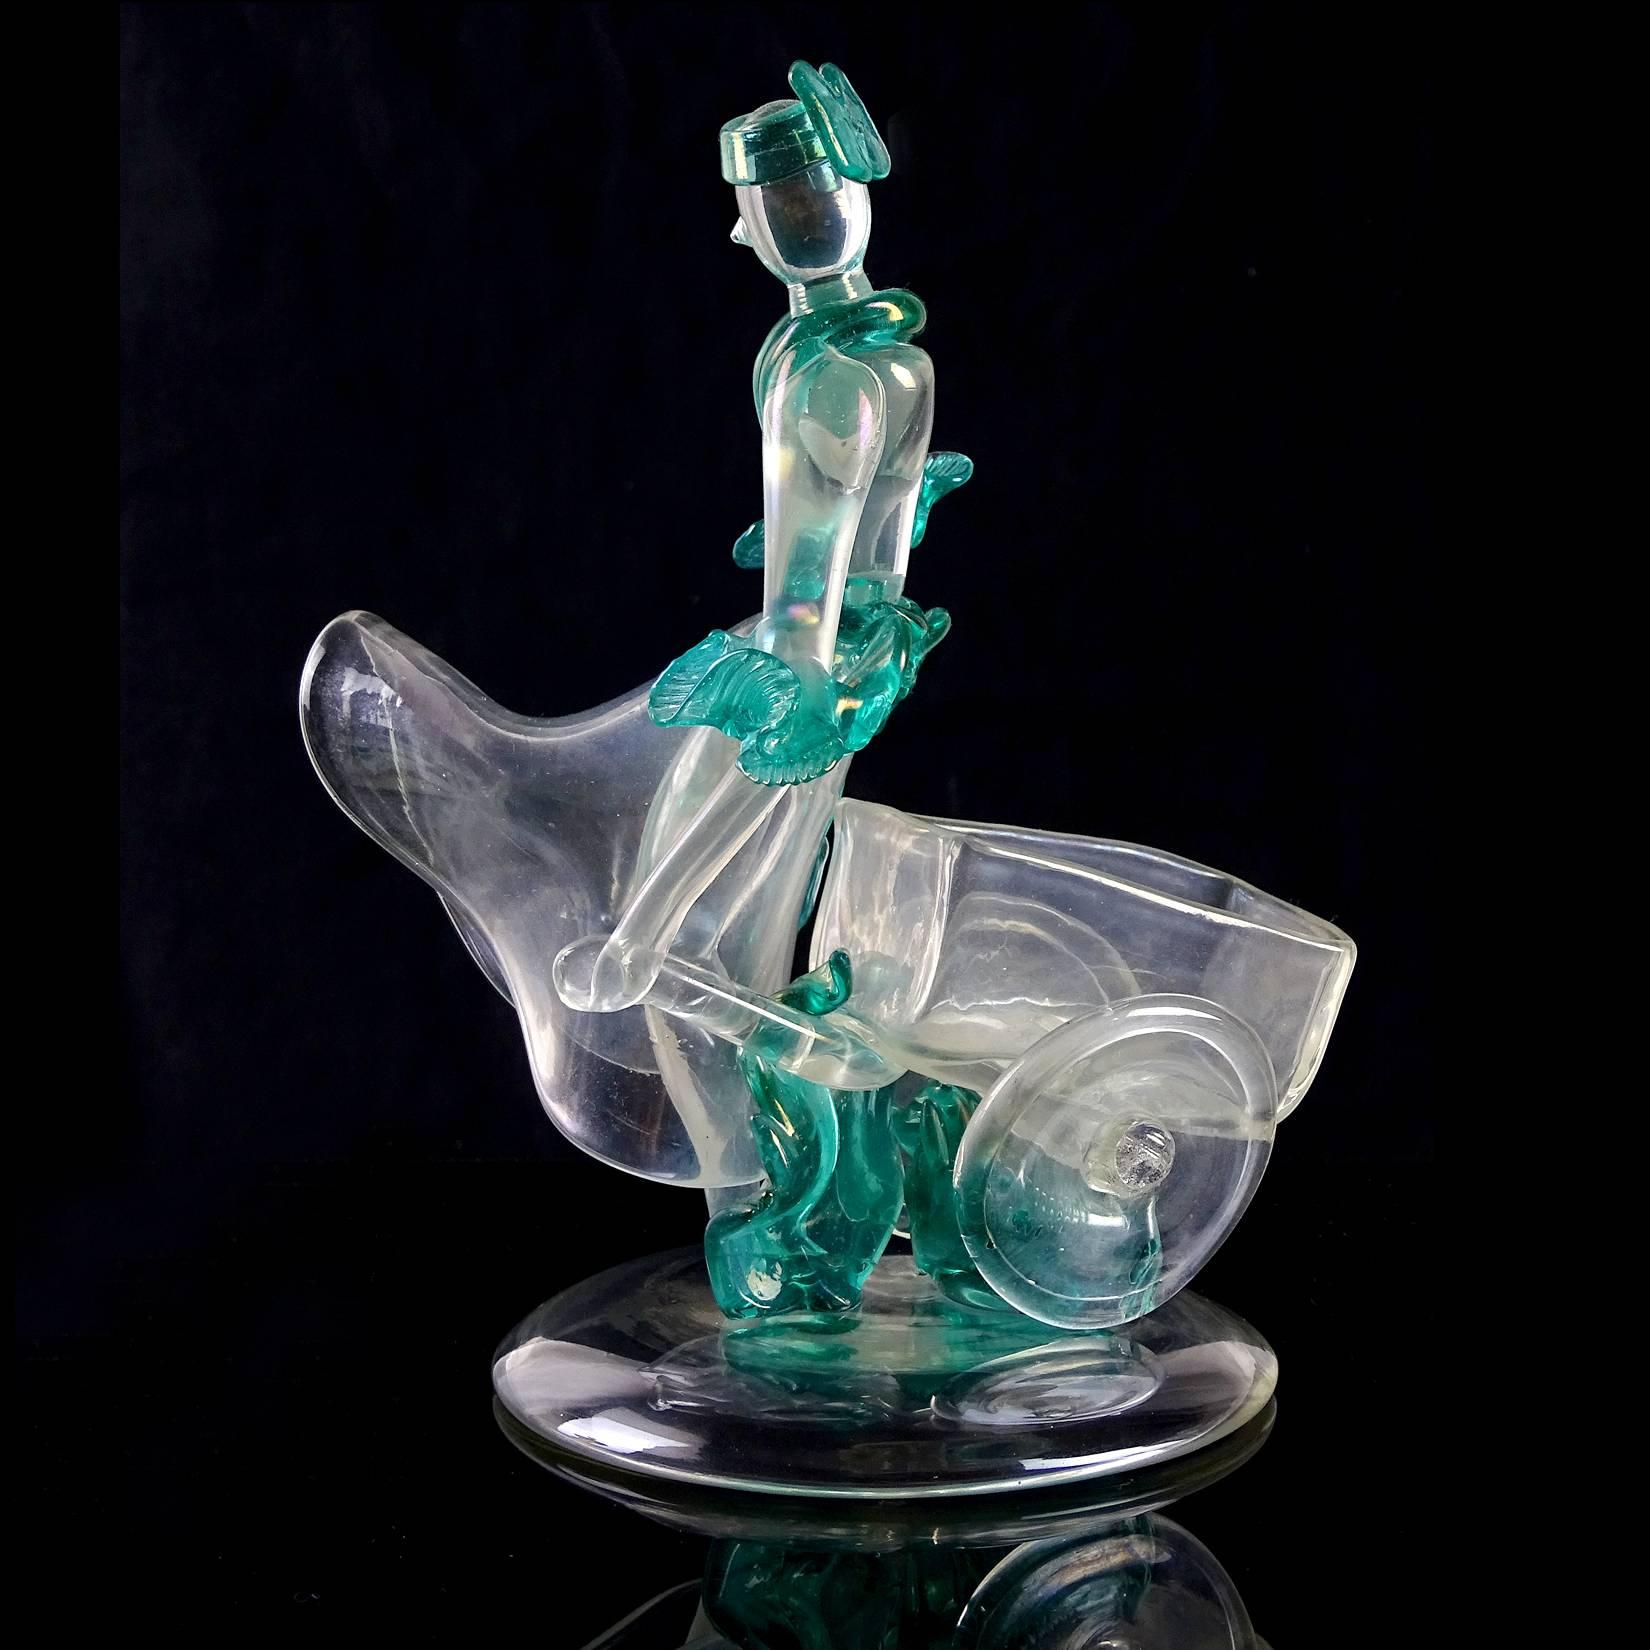 Hand-Crafted Flavio Poli Seguso Vetri d'Arte Murano Iridescent Italian Art Glass Sculpture For Sale